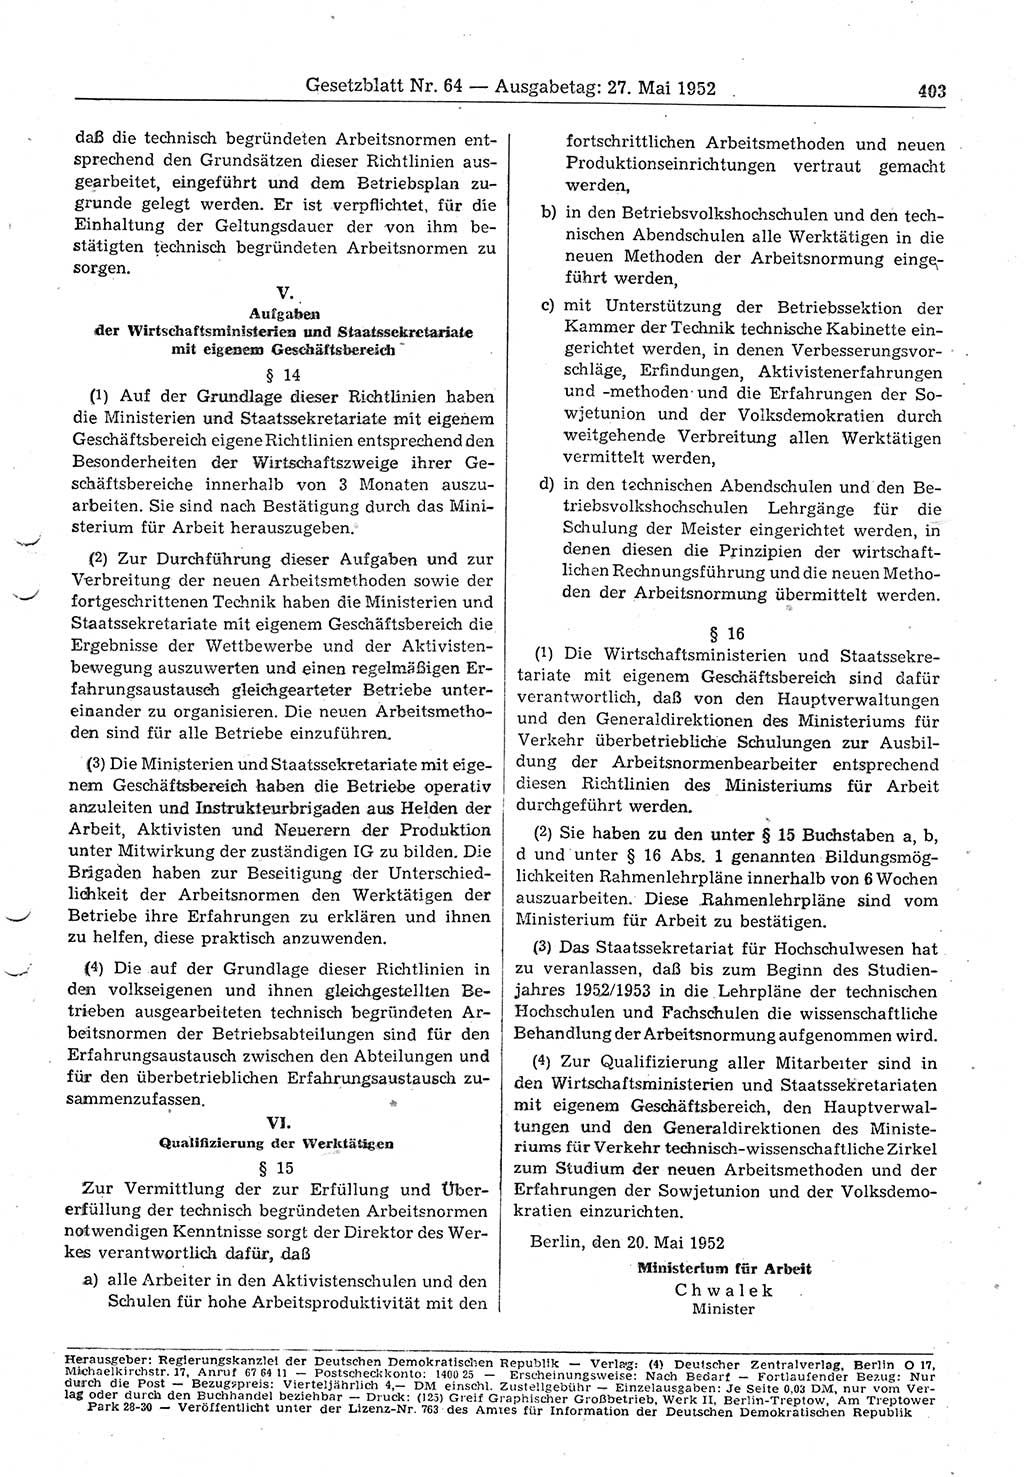 Gesetzblatt (GBl.) der Deutschen Demokratischen Republik (DDR) 1952, Seite 403 (GBl. DDR 1952, S. 403)